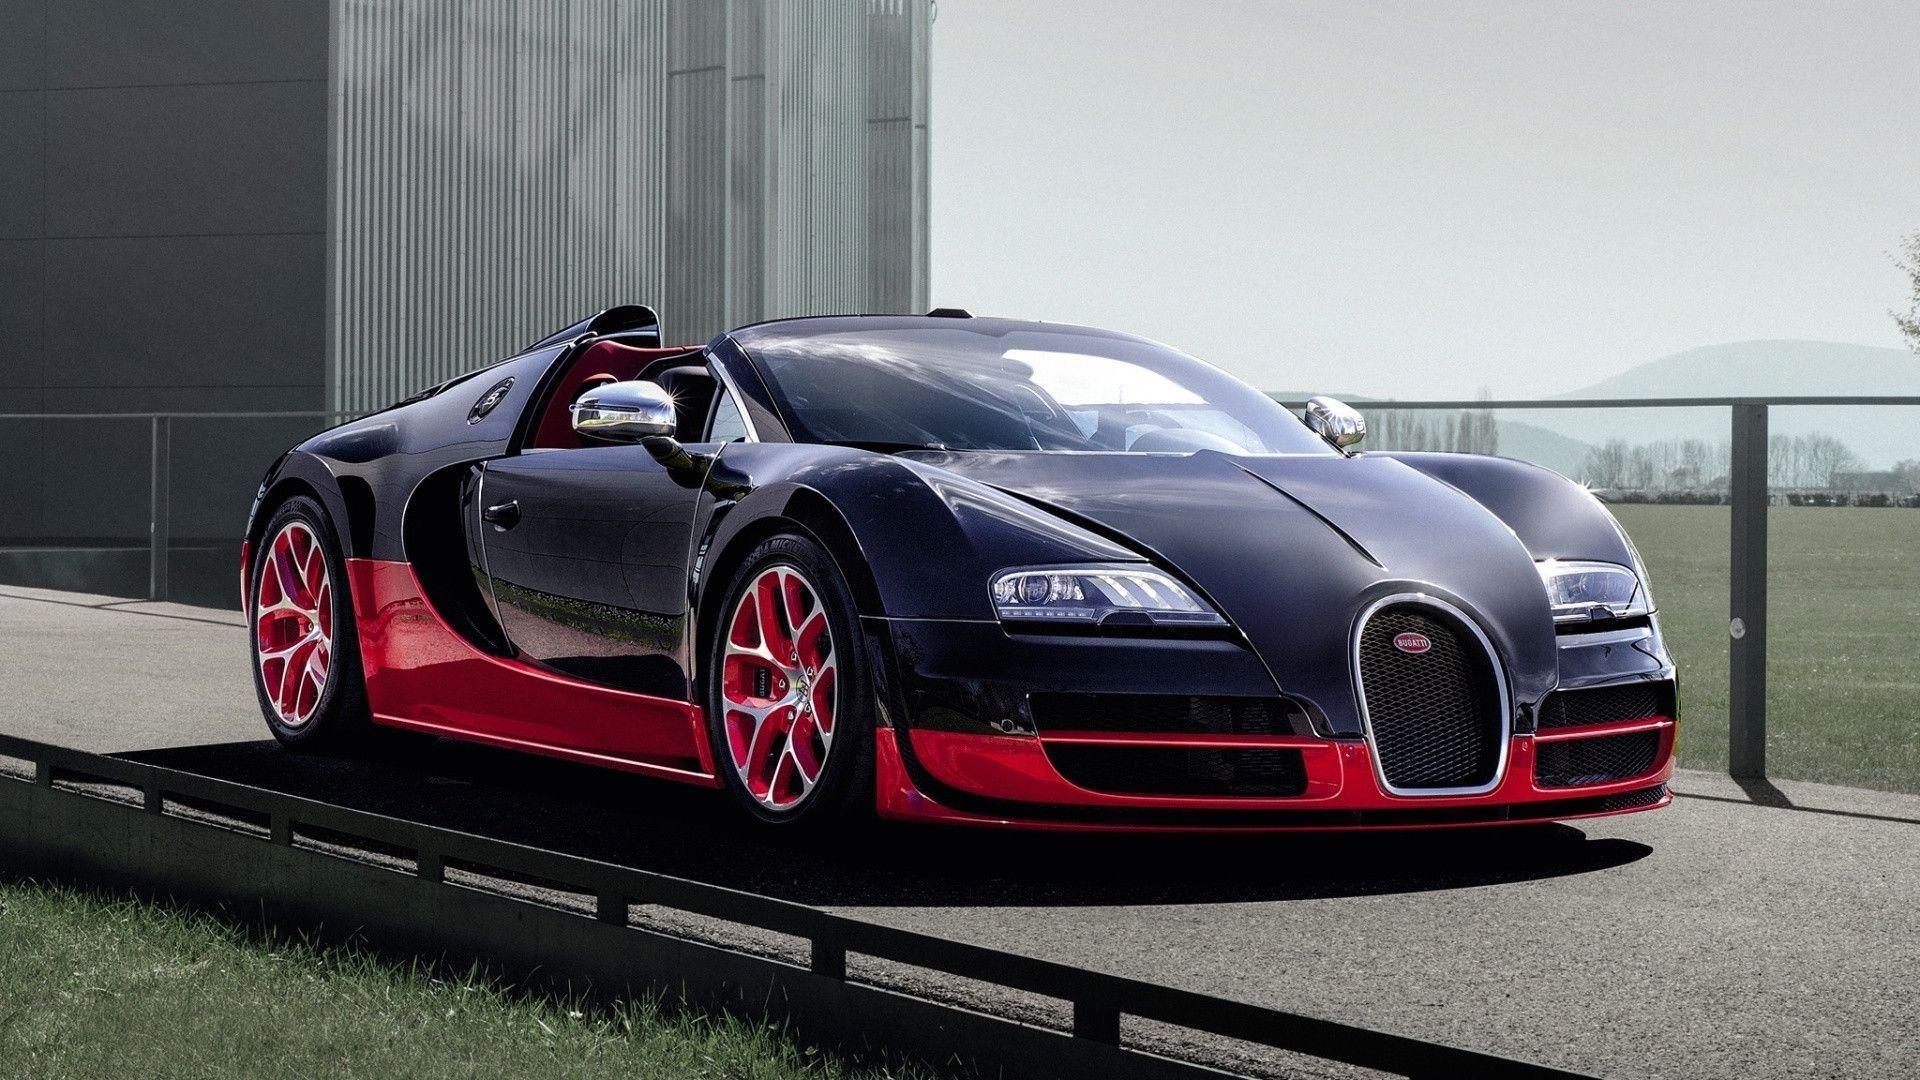 Amazing Bugatti Wallpaper. The One Car